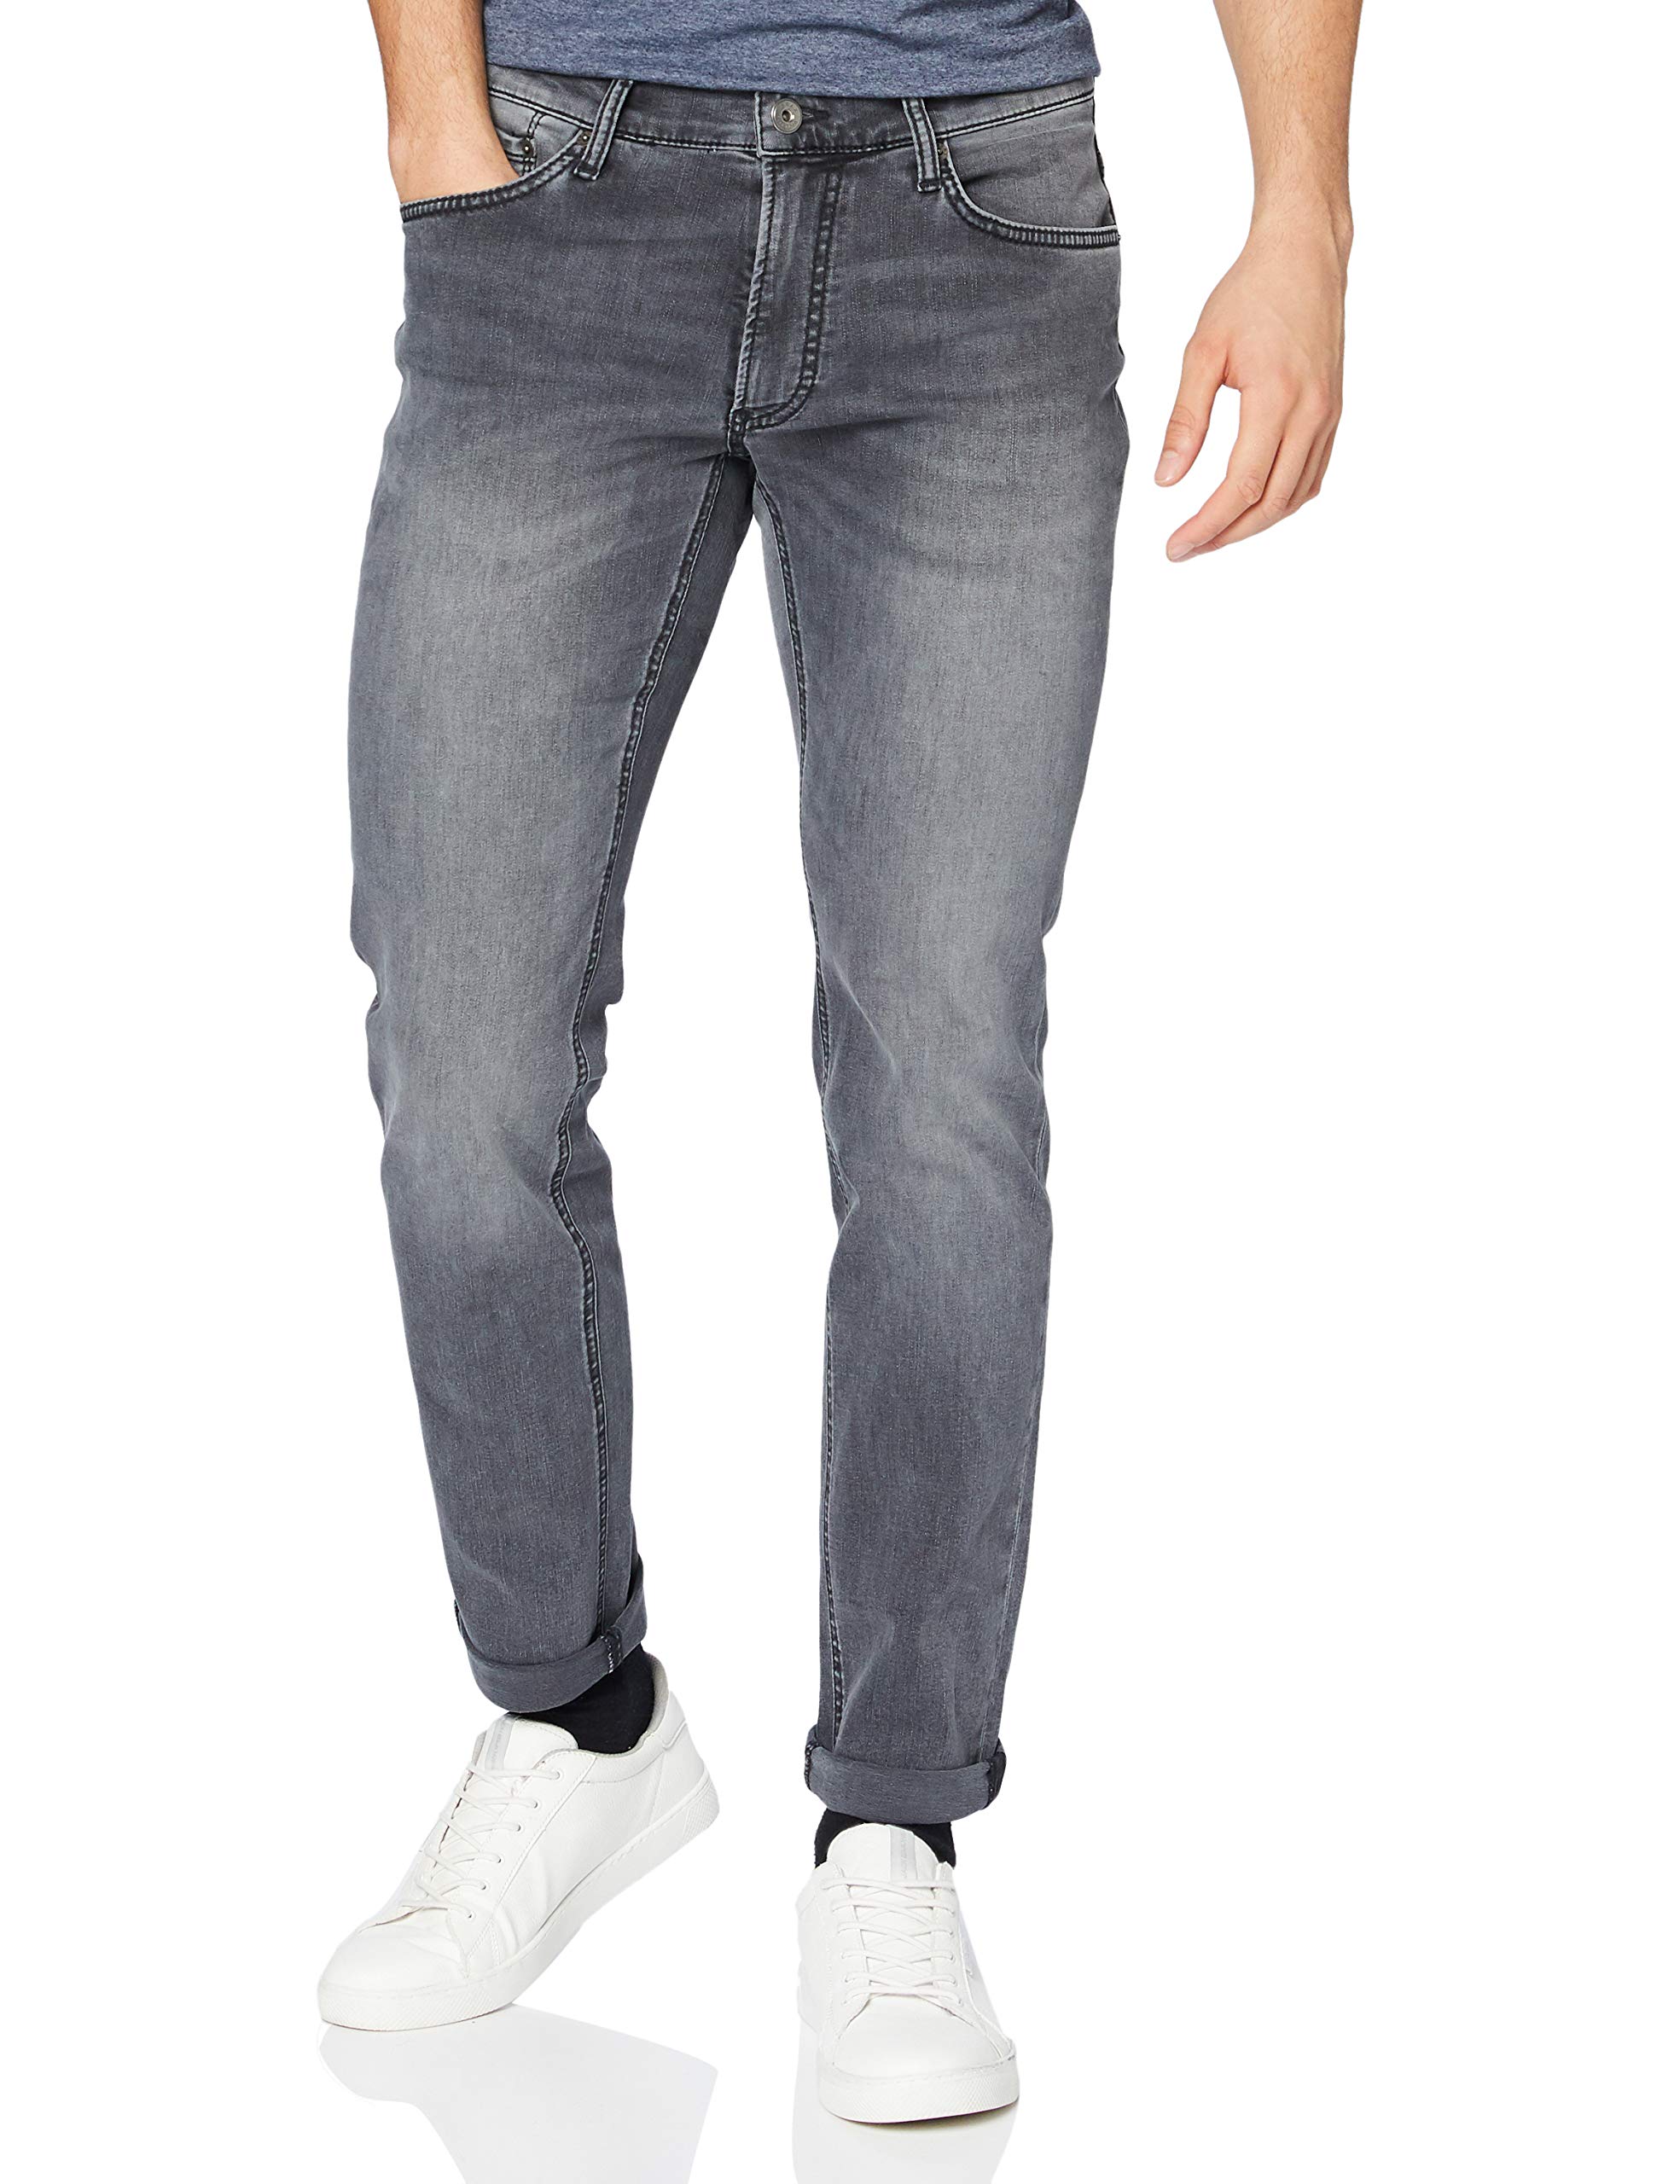 BRAX Herren Stijl Chuck Hi-flex denim Jeans, Stone Grey Used, 42W / 30L EU